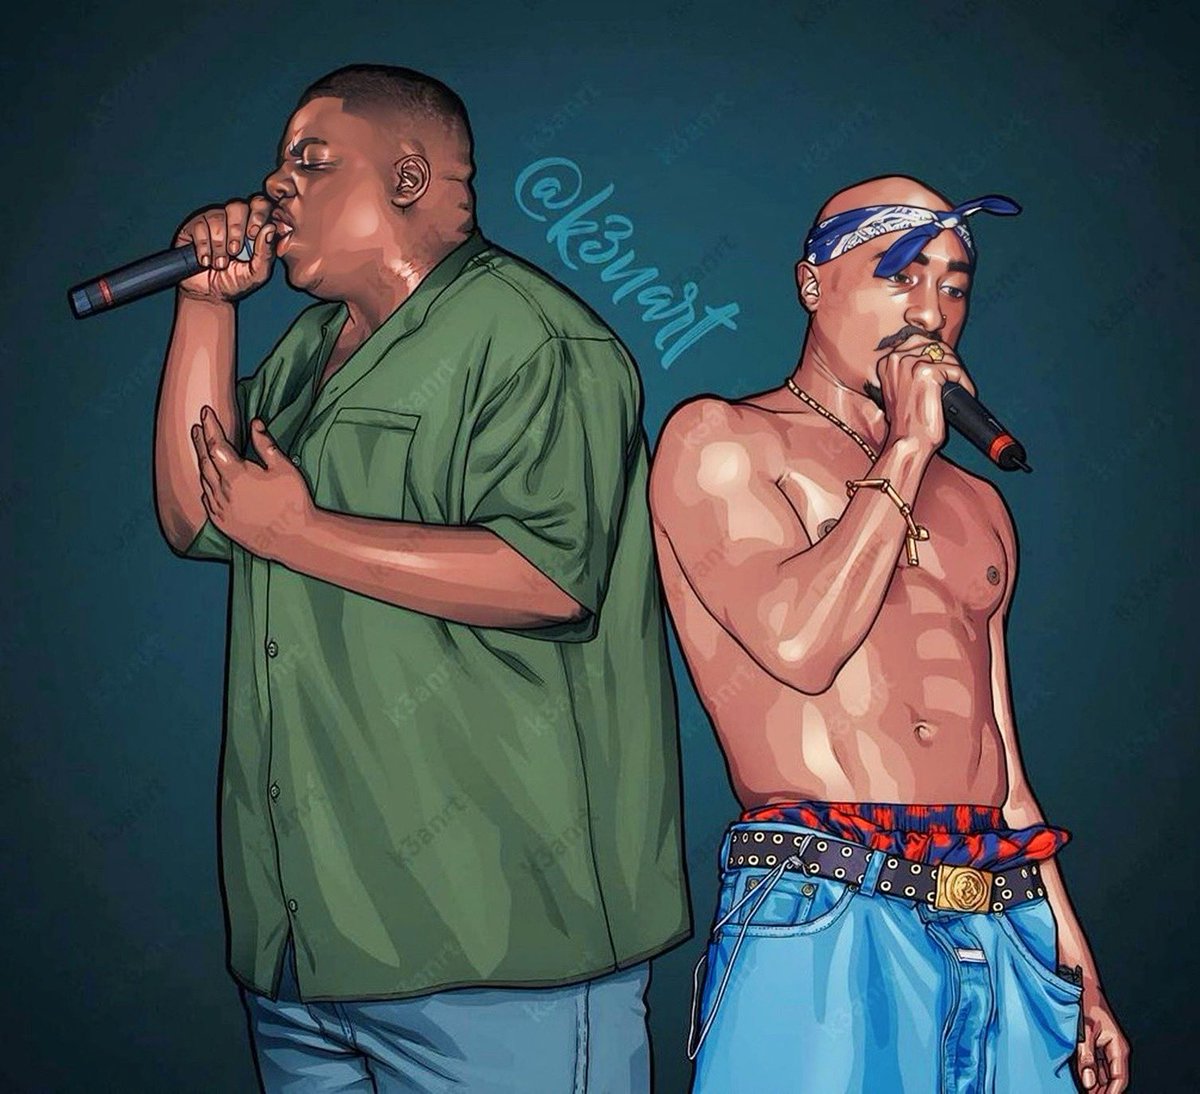 2Pac & Biggie 🙏🏽 Rap Legends 🕊️

🎨 Via: IG/k3nart

#rap #hiphop #hiphopofthe90s #rapmusic #hiphopmusic #hiphopculture #90s #90shiphop #90srap #artwork #oldschool #oldschoolhiphop #icecube #snoop #art #2pac #tupac #tupacshakur #2pacshakur #notoriousbig #music